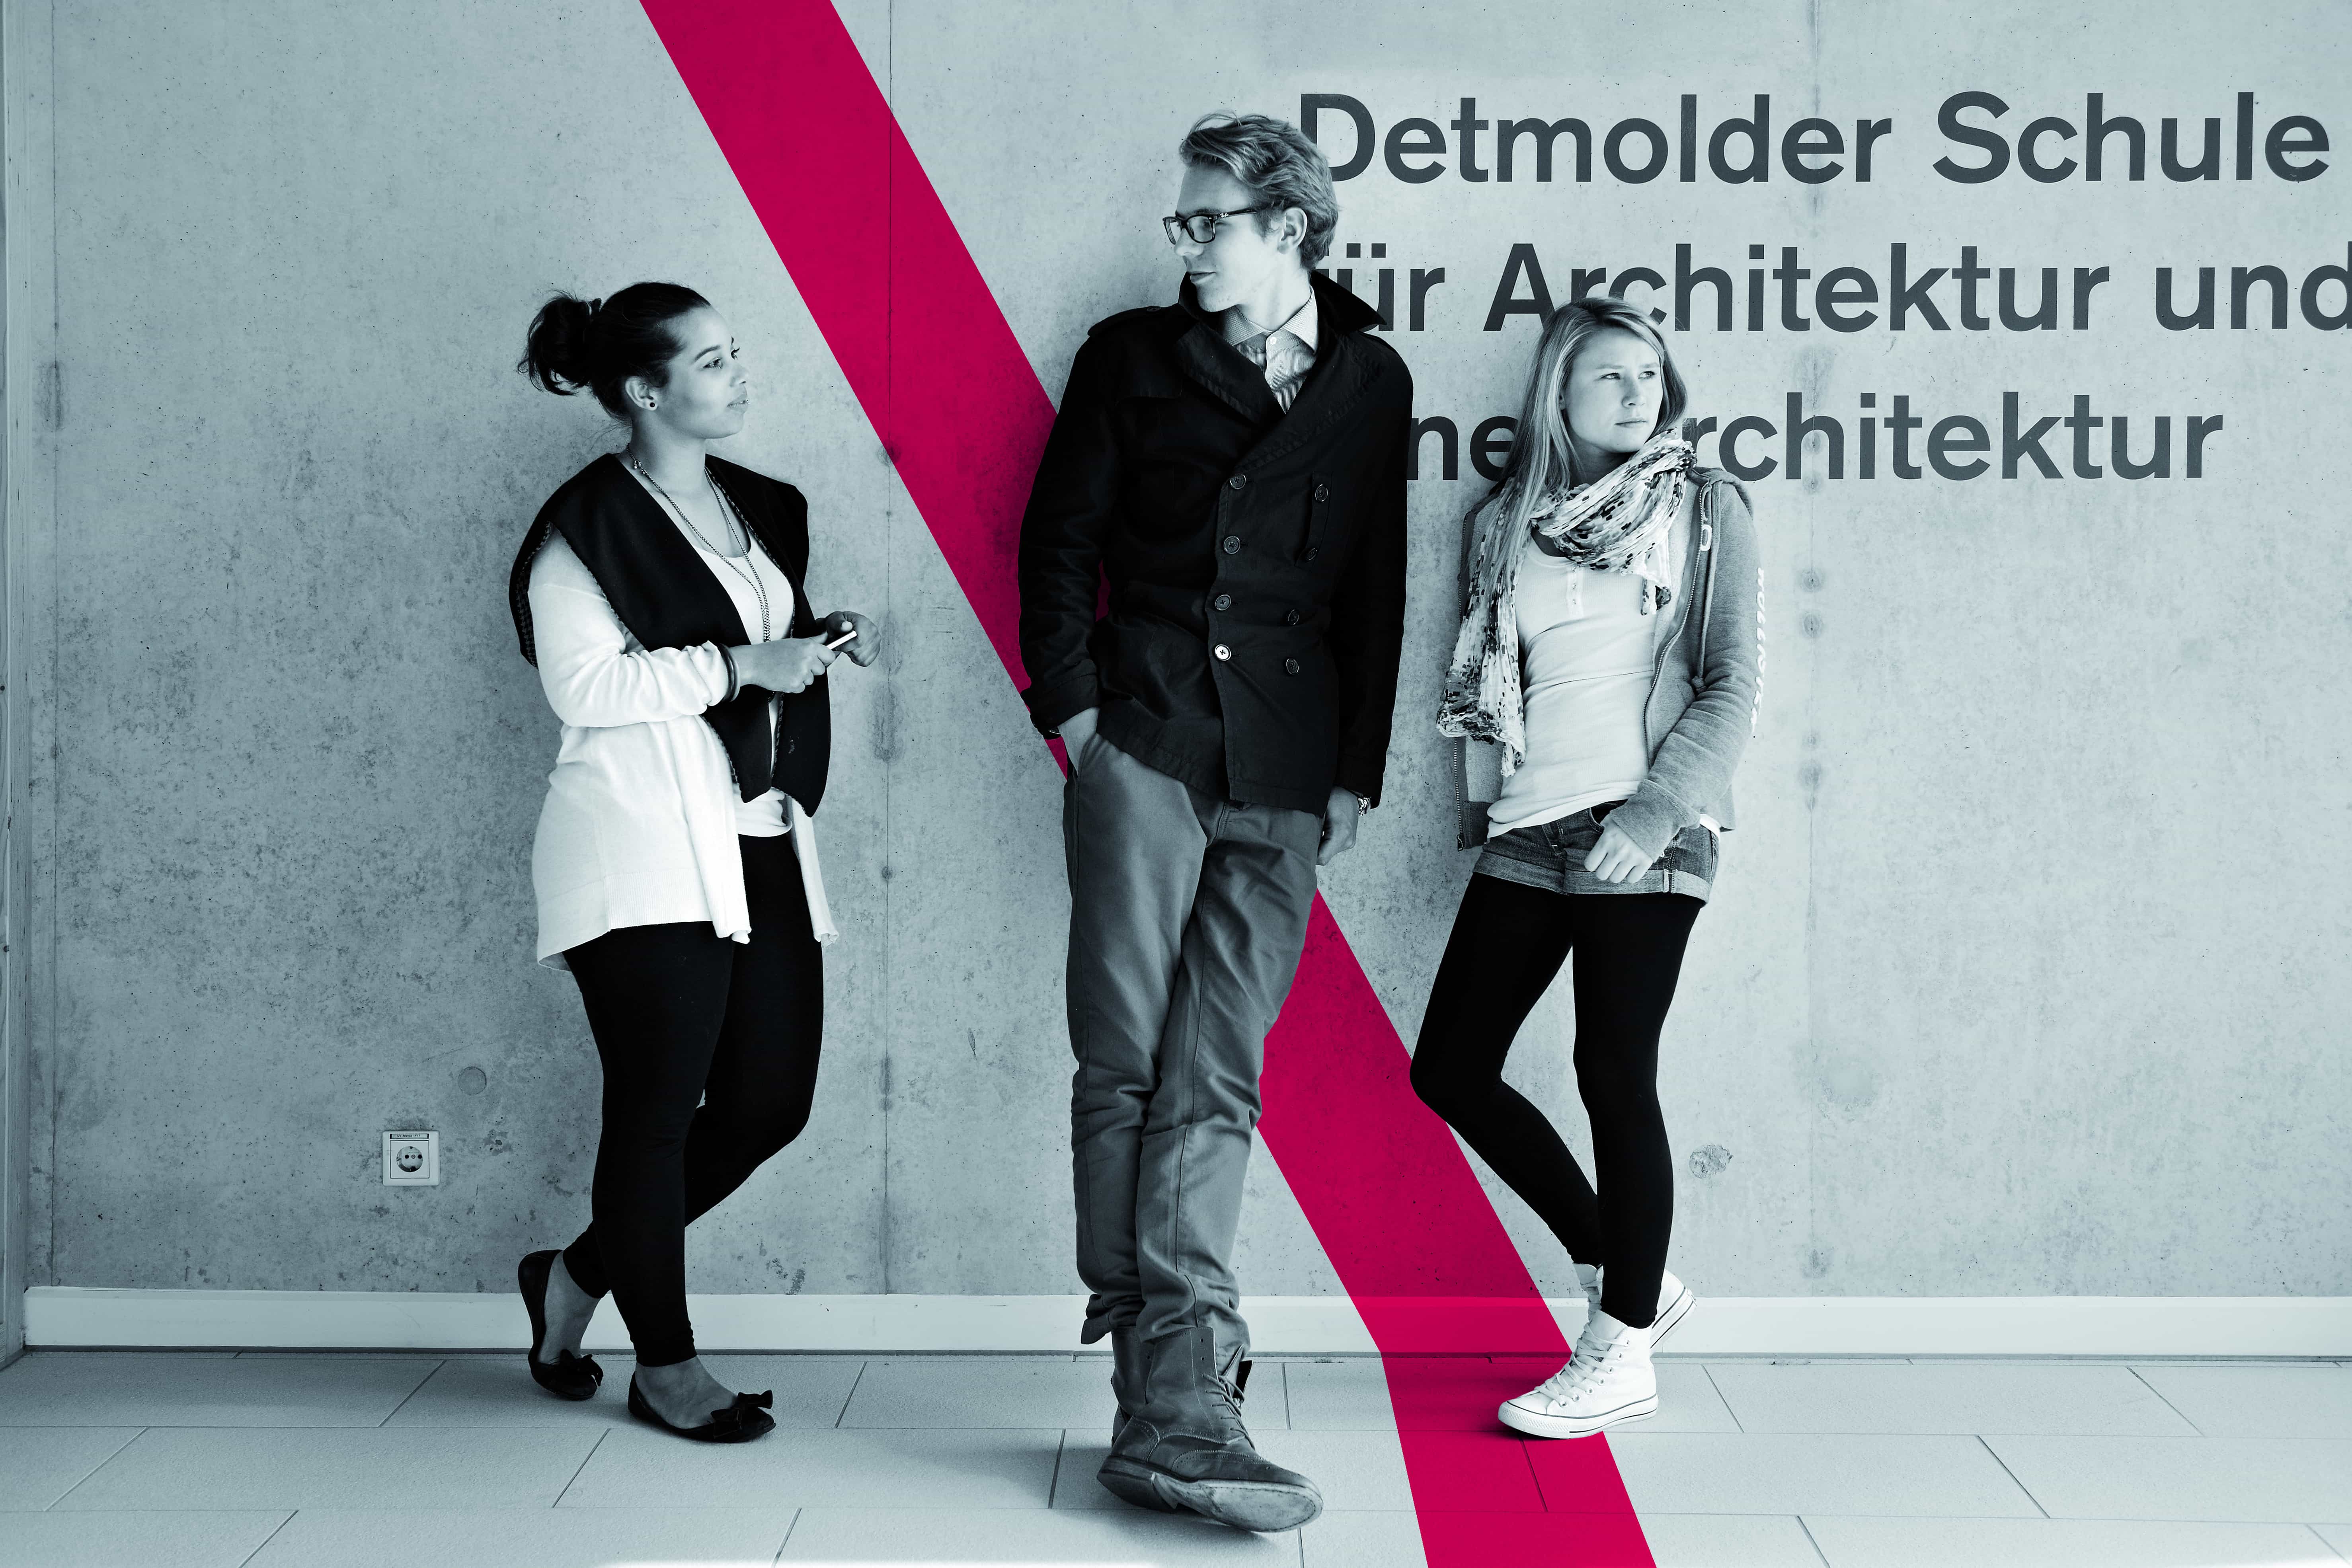 Bureau Johannes Erler – Detmold Schule für Architektur und Innenarchitektur